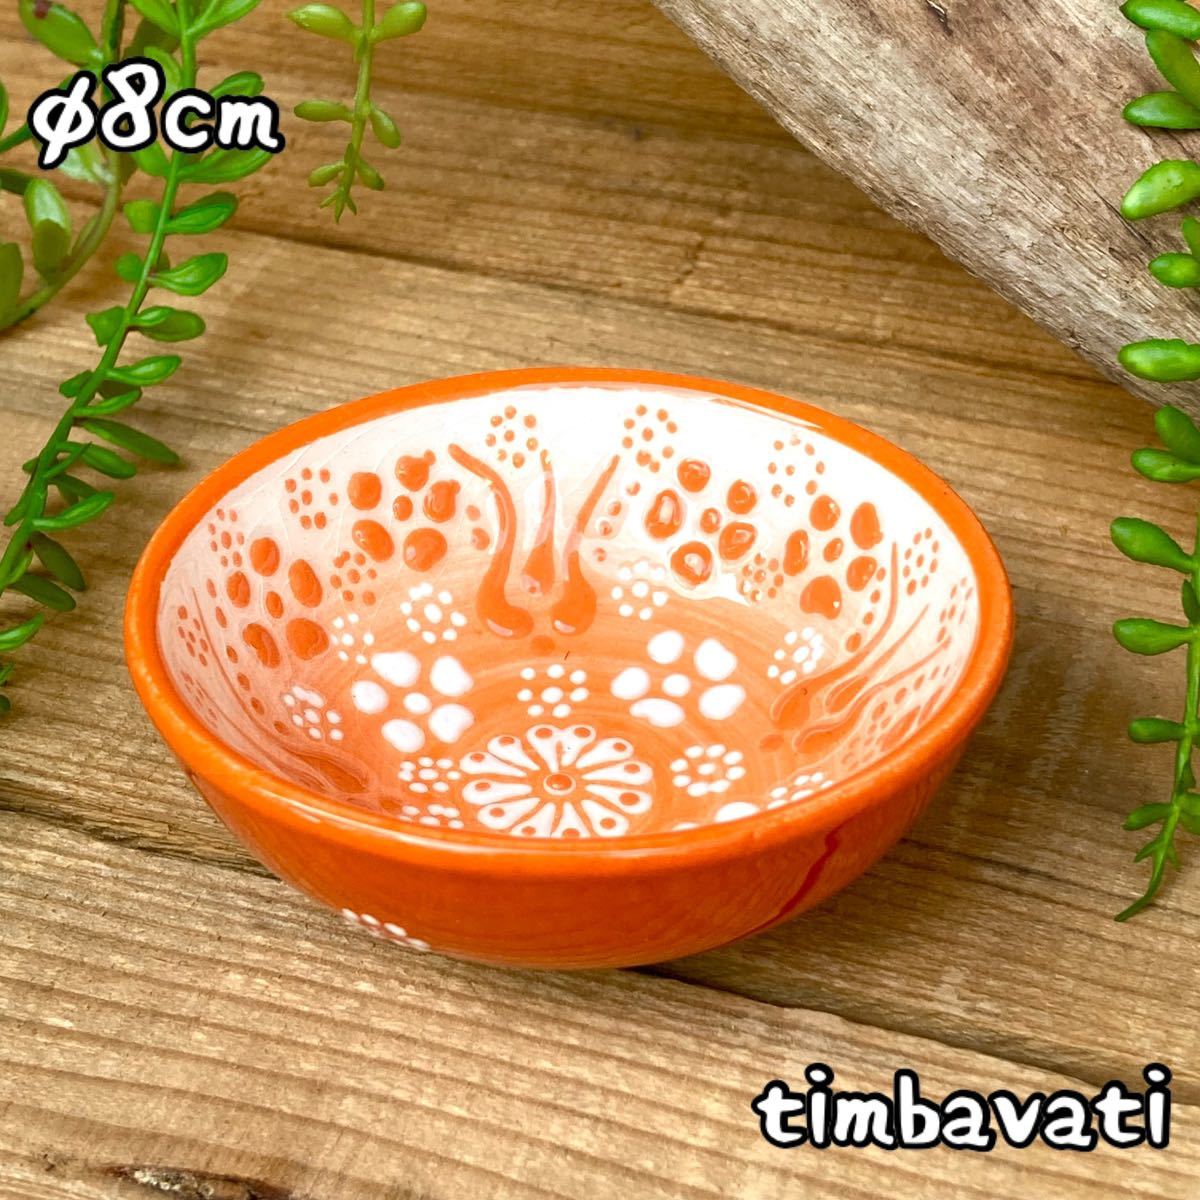 8cm☆Nuevo☆Caja de accesorios de cuenco de cerámica turca plato pequeño hecho a mano Cerámica Kyutahya naranja [envío gratuito condicional] 176, vajilla occidental, bol, otros